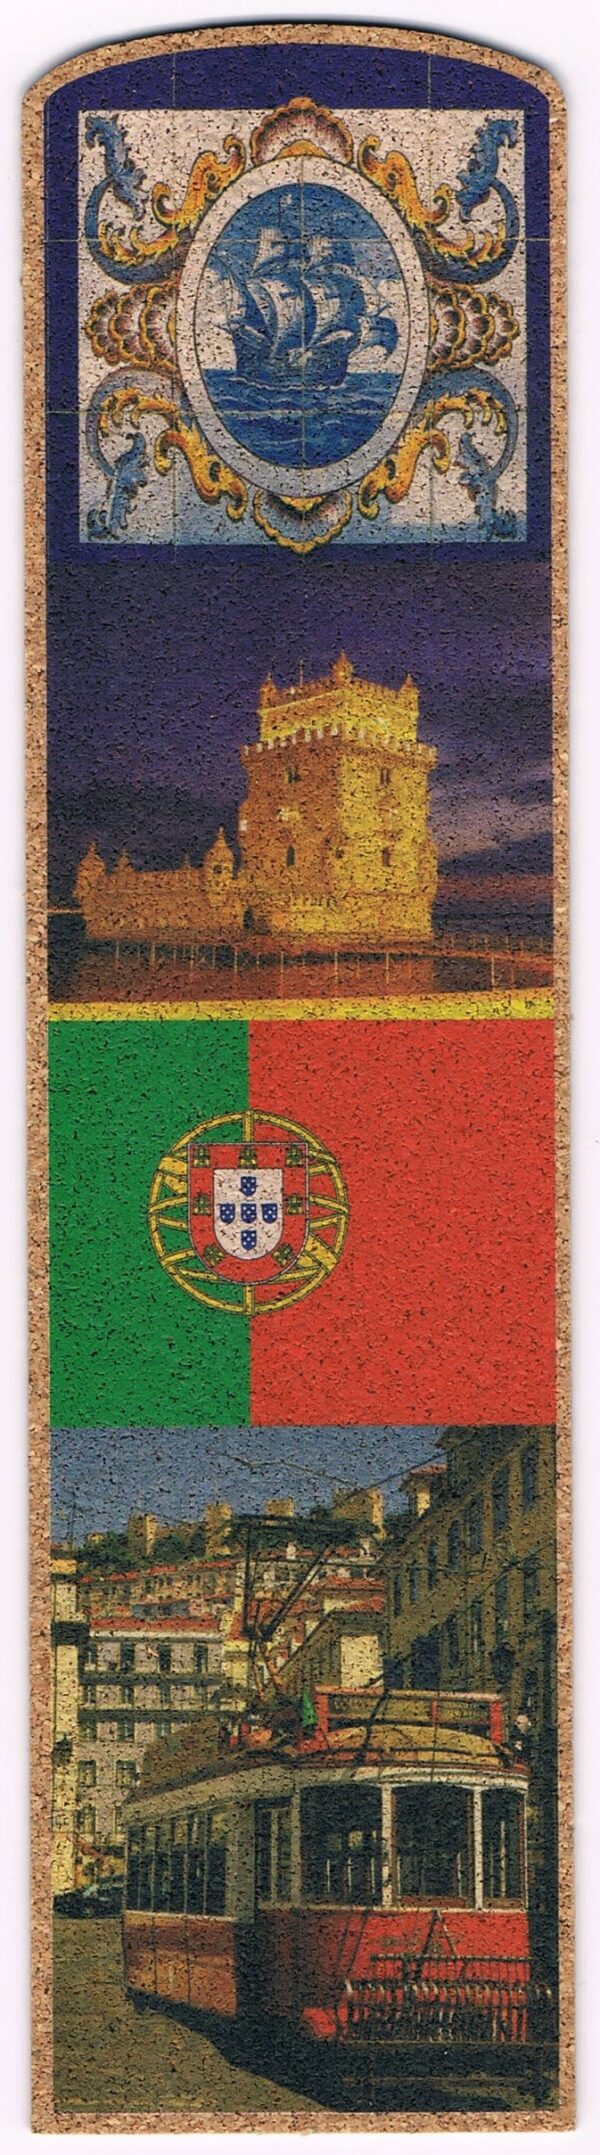 marcador de cortiça com imagens de portugal e bandeira